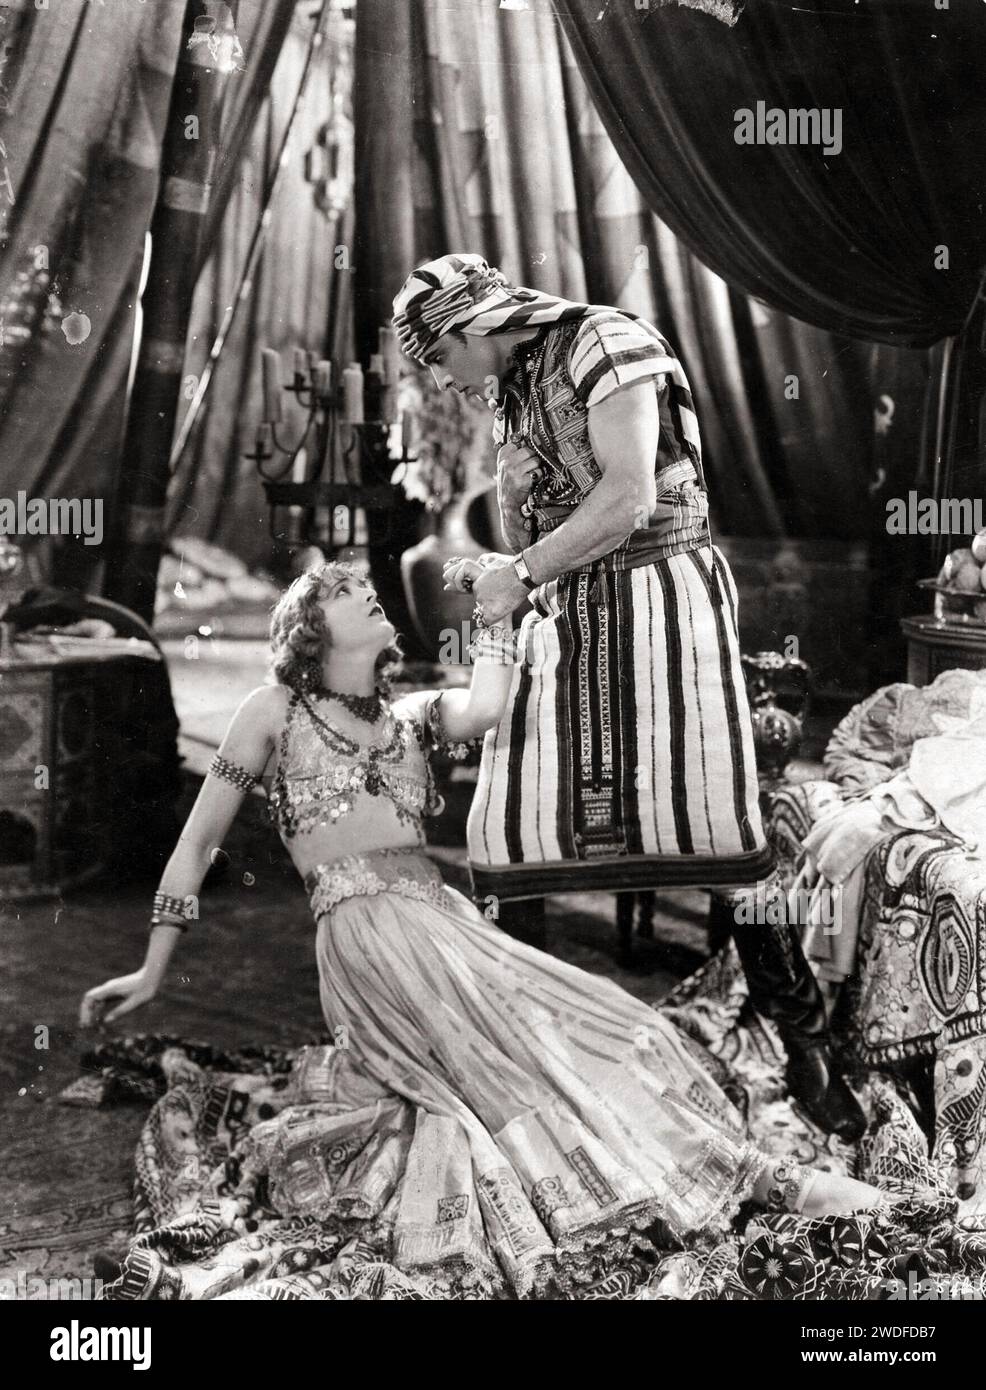 Attore Rudolph Valentino - il figlio dello sceicco - foto pubblicitaria. Foto d'epoca di Valentino e Vilma Banky nel dramma muto del 1926 Foto Stock